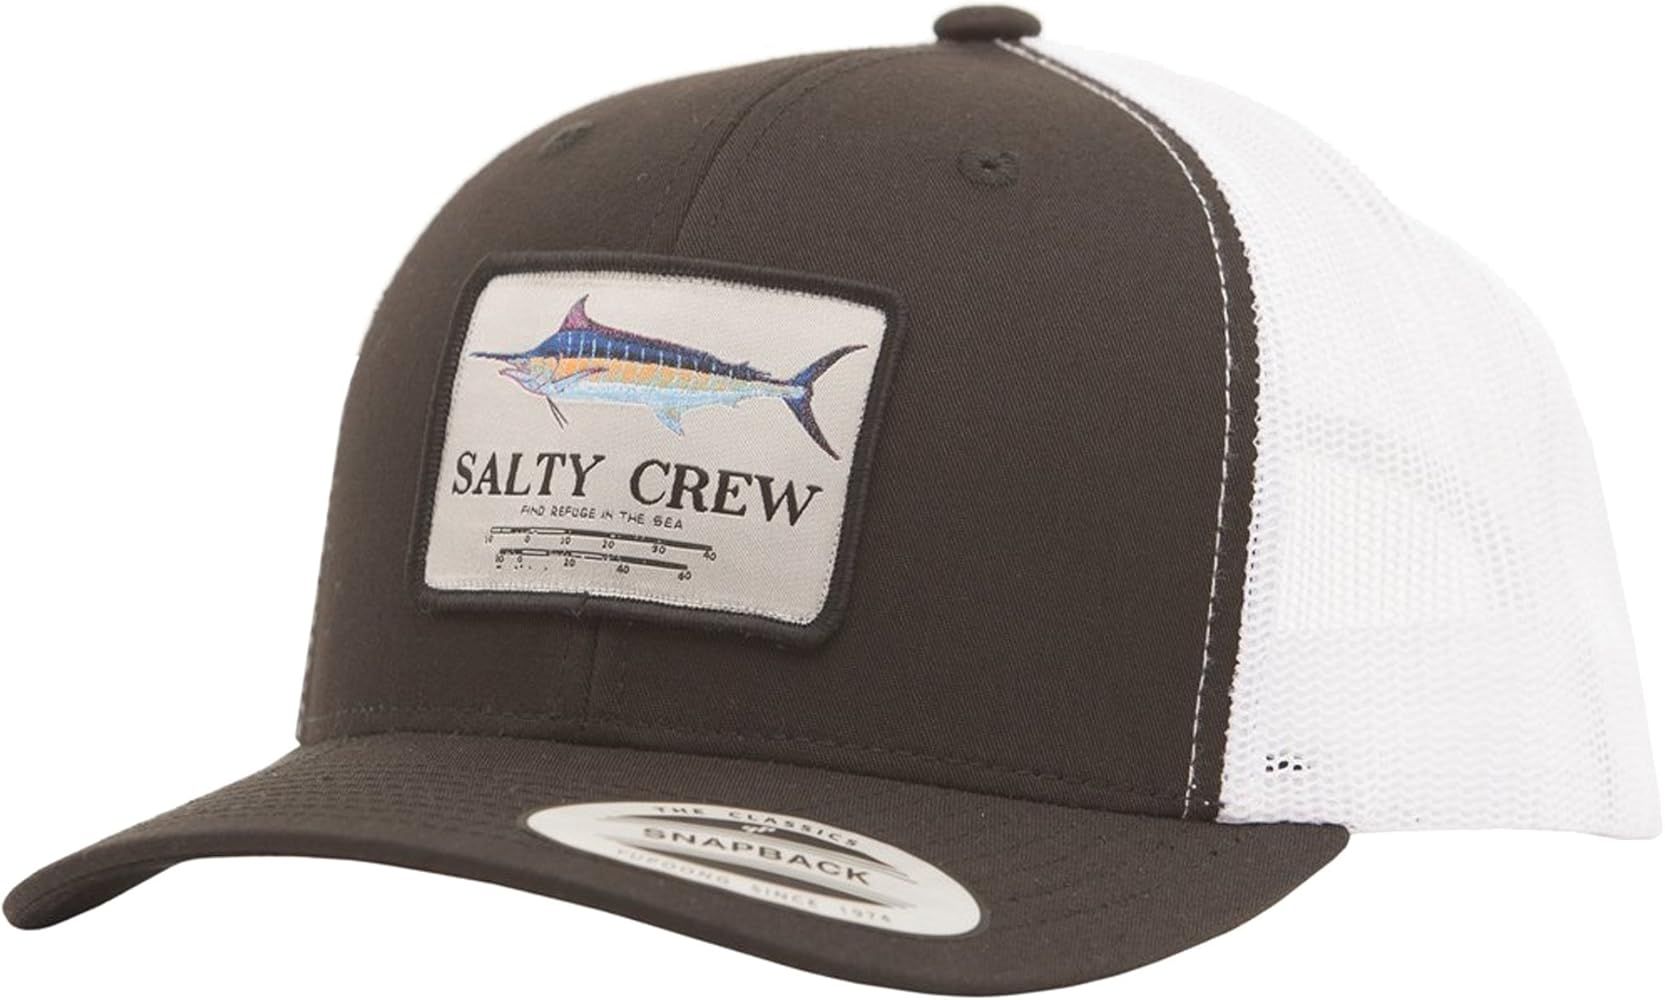 Salty Crew | Amazon (US)